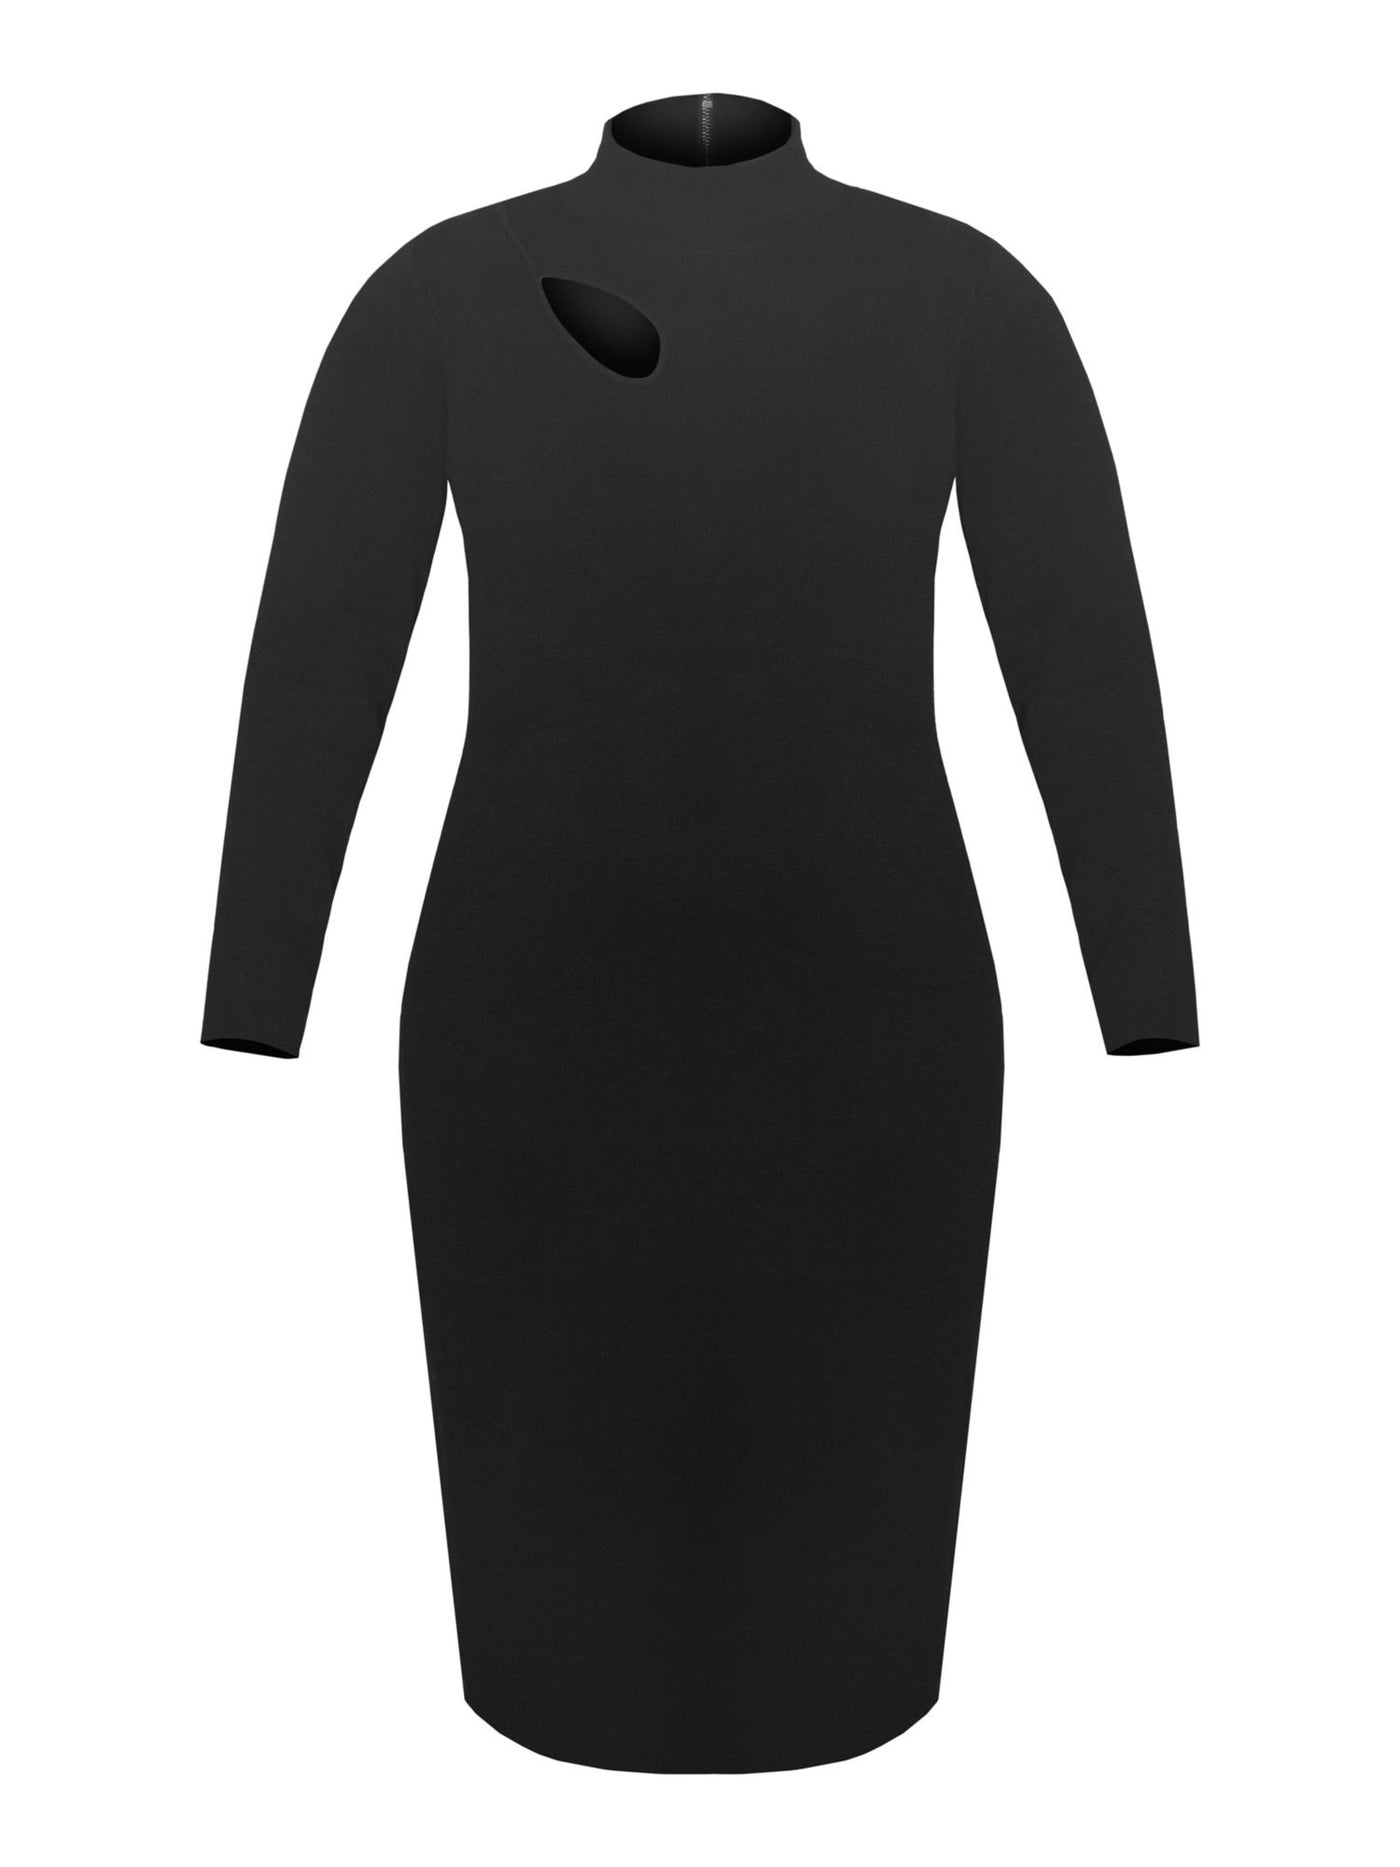 RACHEL RACHEL ROY Womens Black Stretch Cut Out Zippered Unlined Long Sleeve Mock Neck Midi Wear To Work Sweater Dress Plus 3X